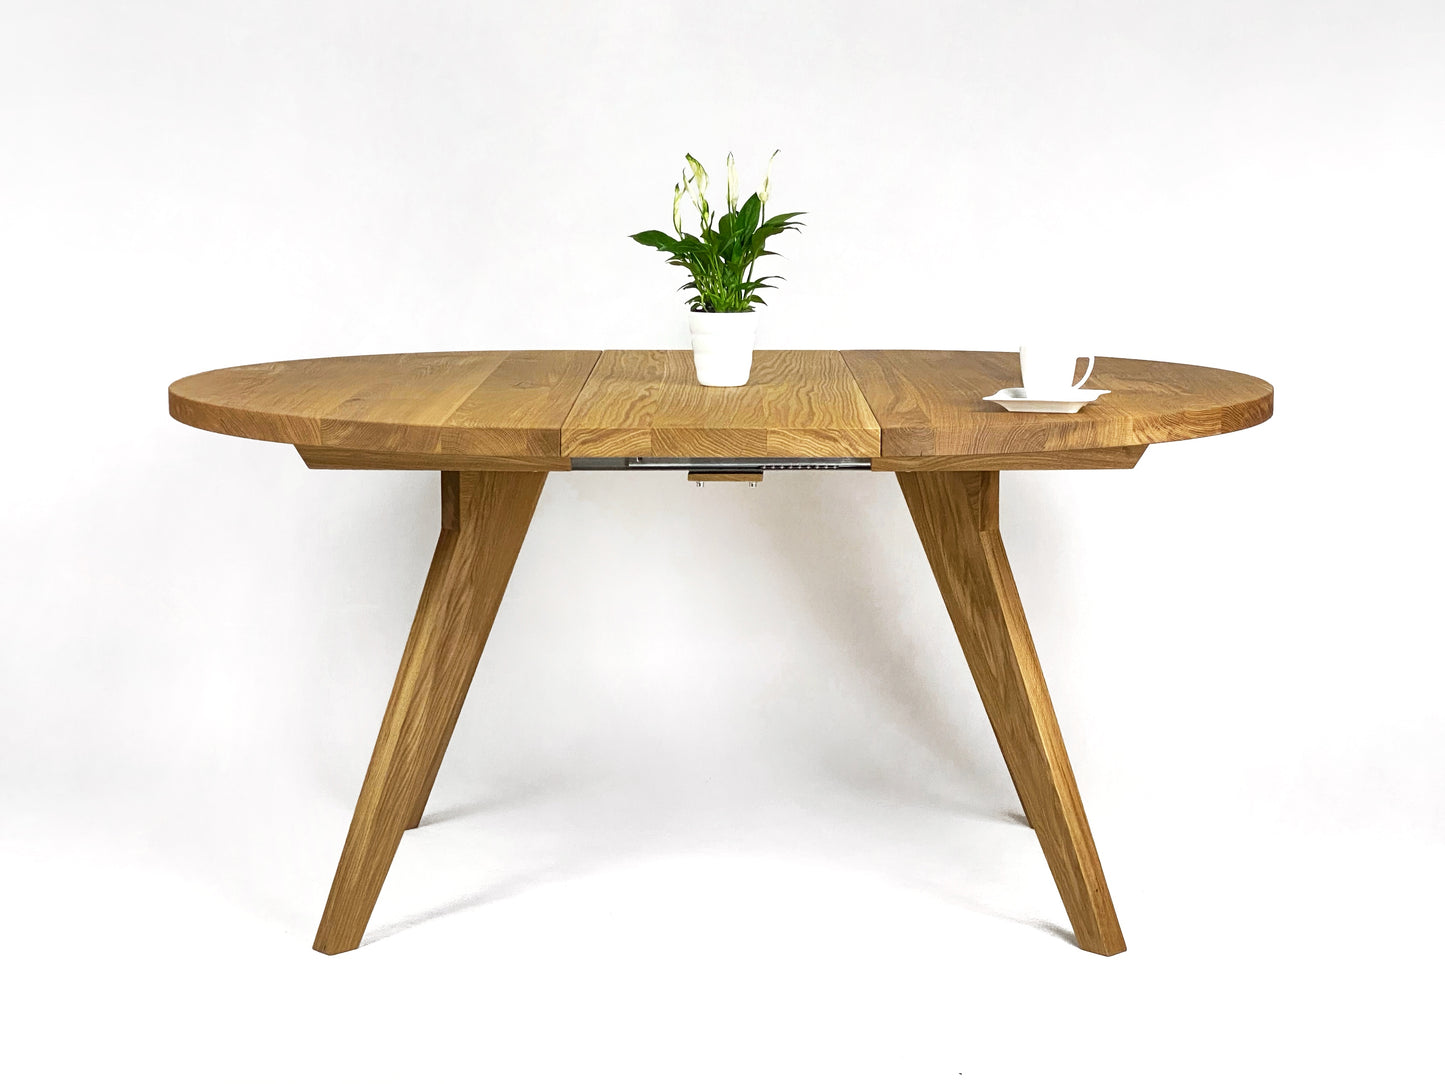 HILO table - oak